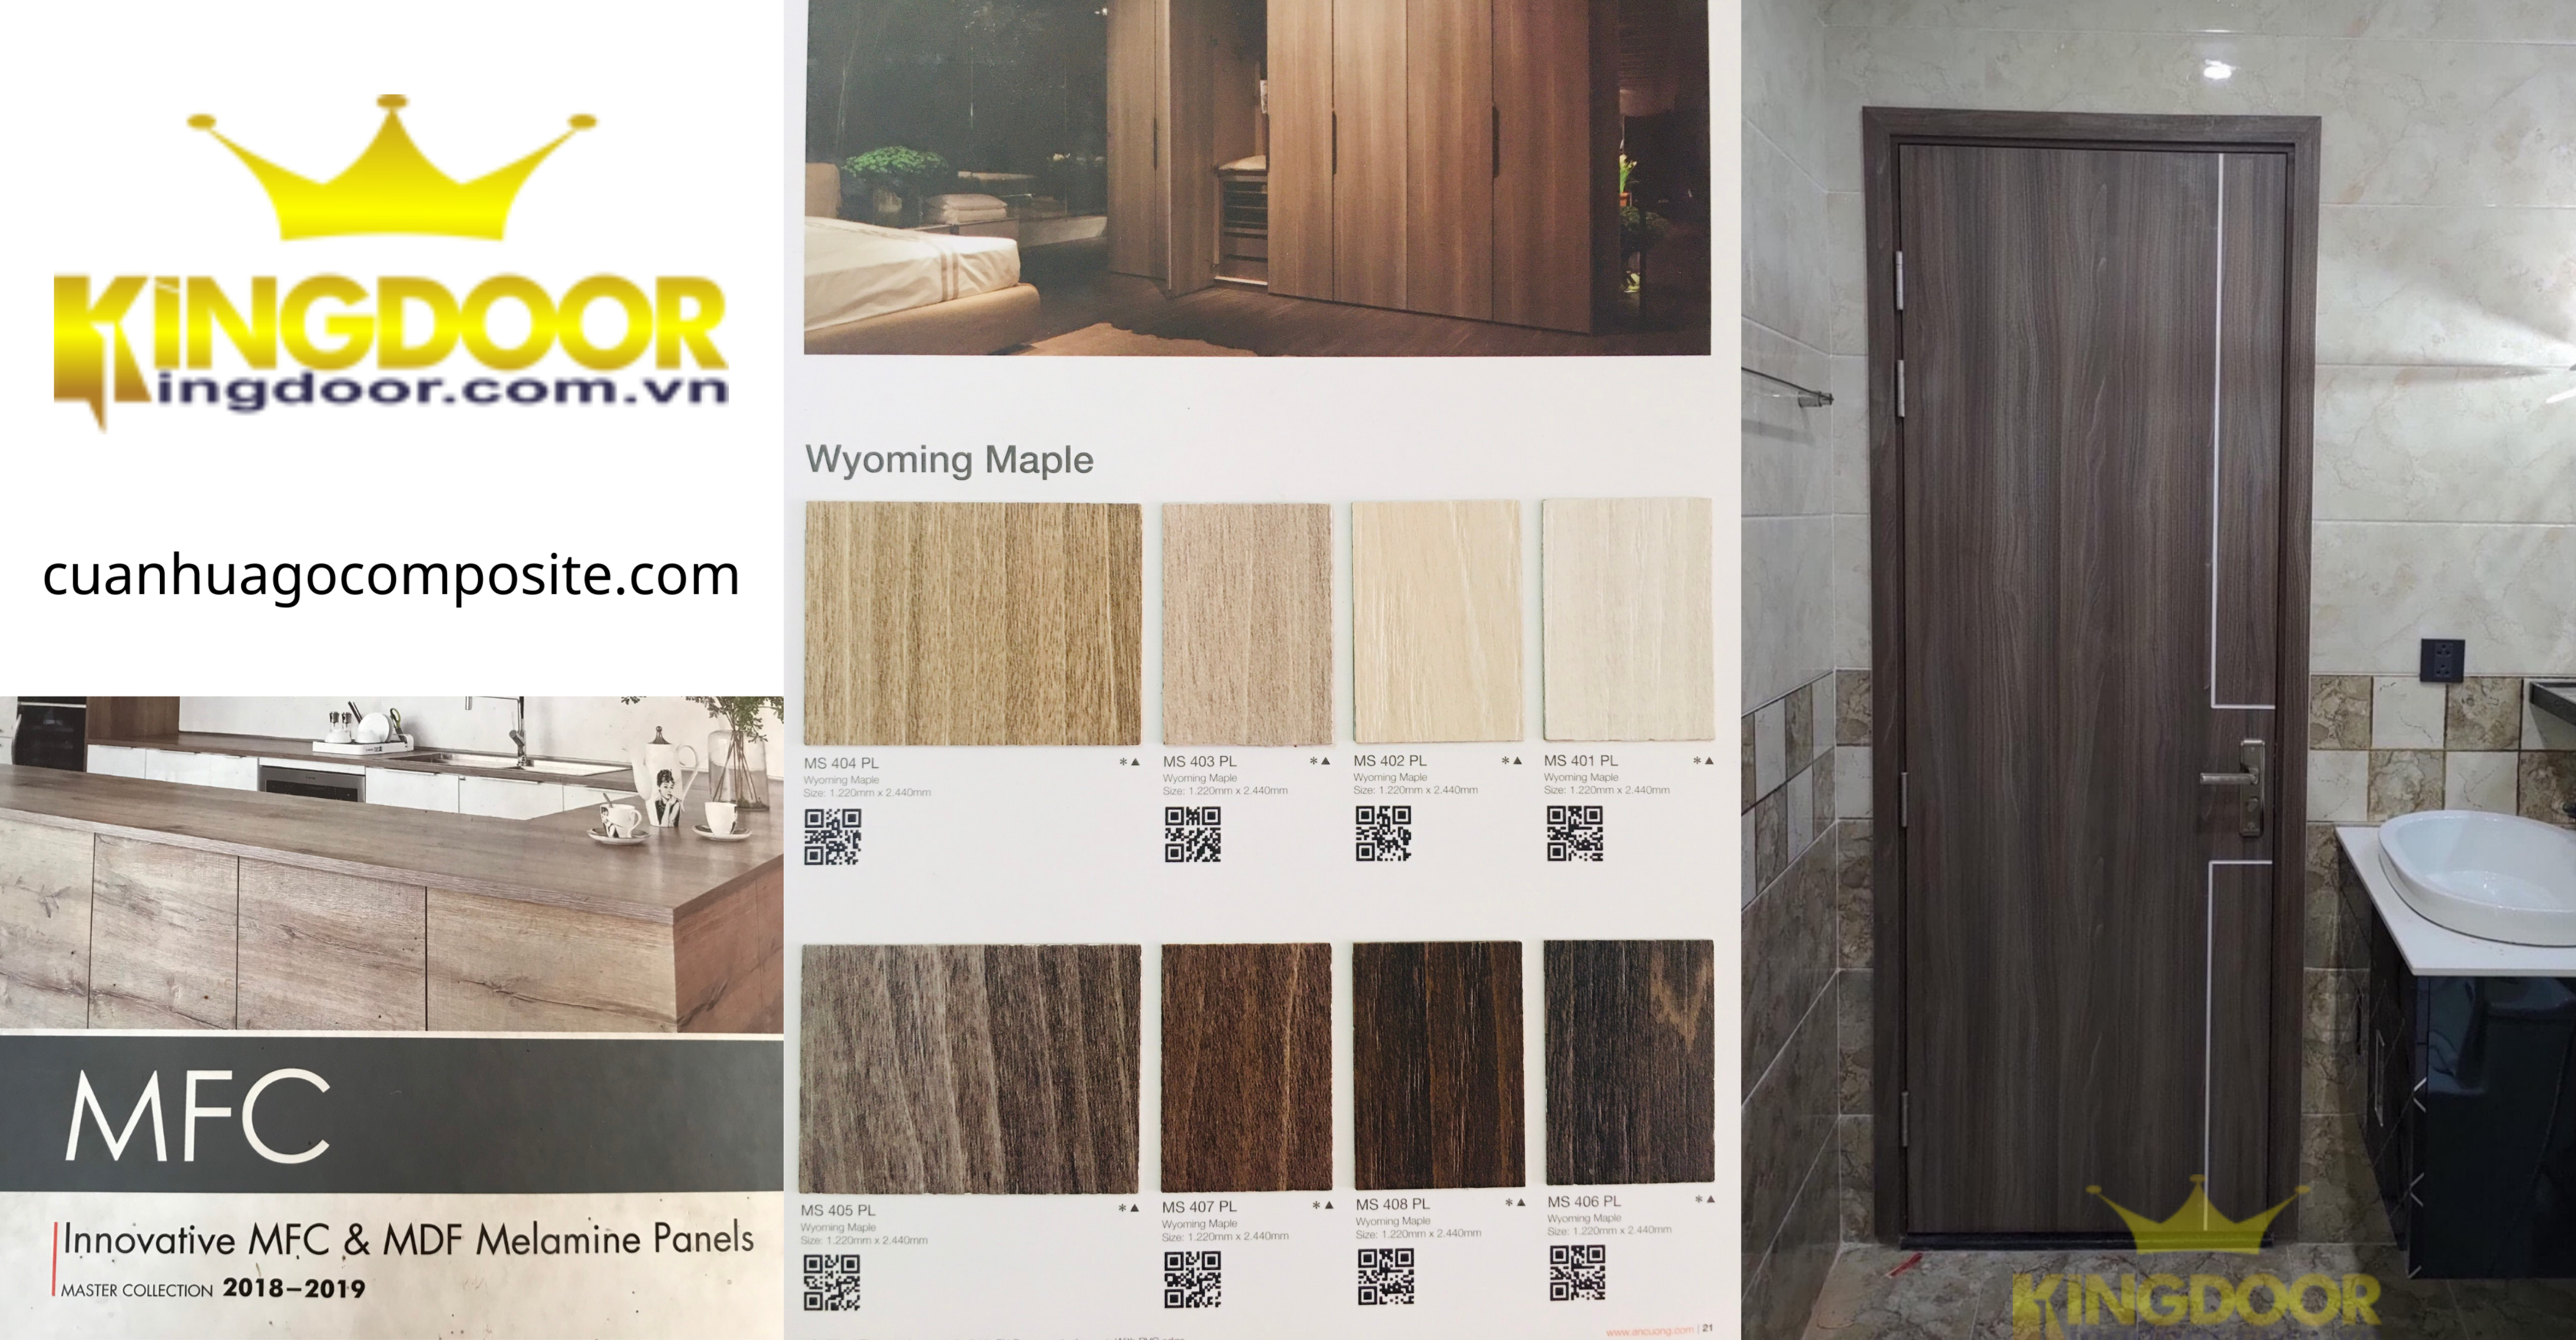 Mẫu cửa gỗ công nghiệp MDF melamine - Kingdoor cửa hàng cung cấp cửa nhựa - cửa gỗ tại Nha Trang